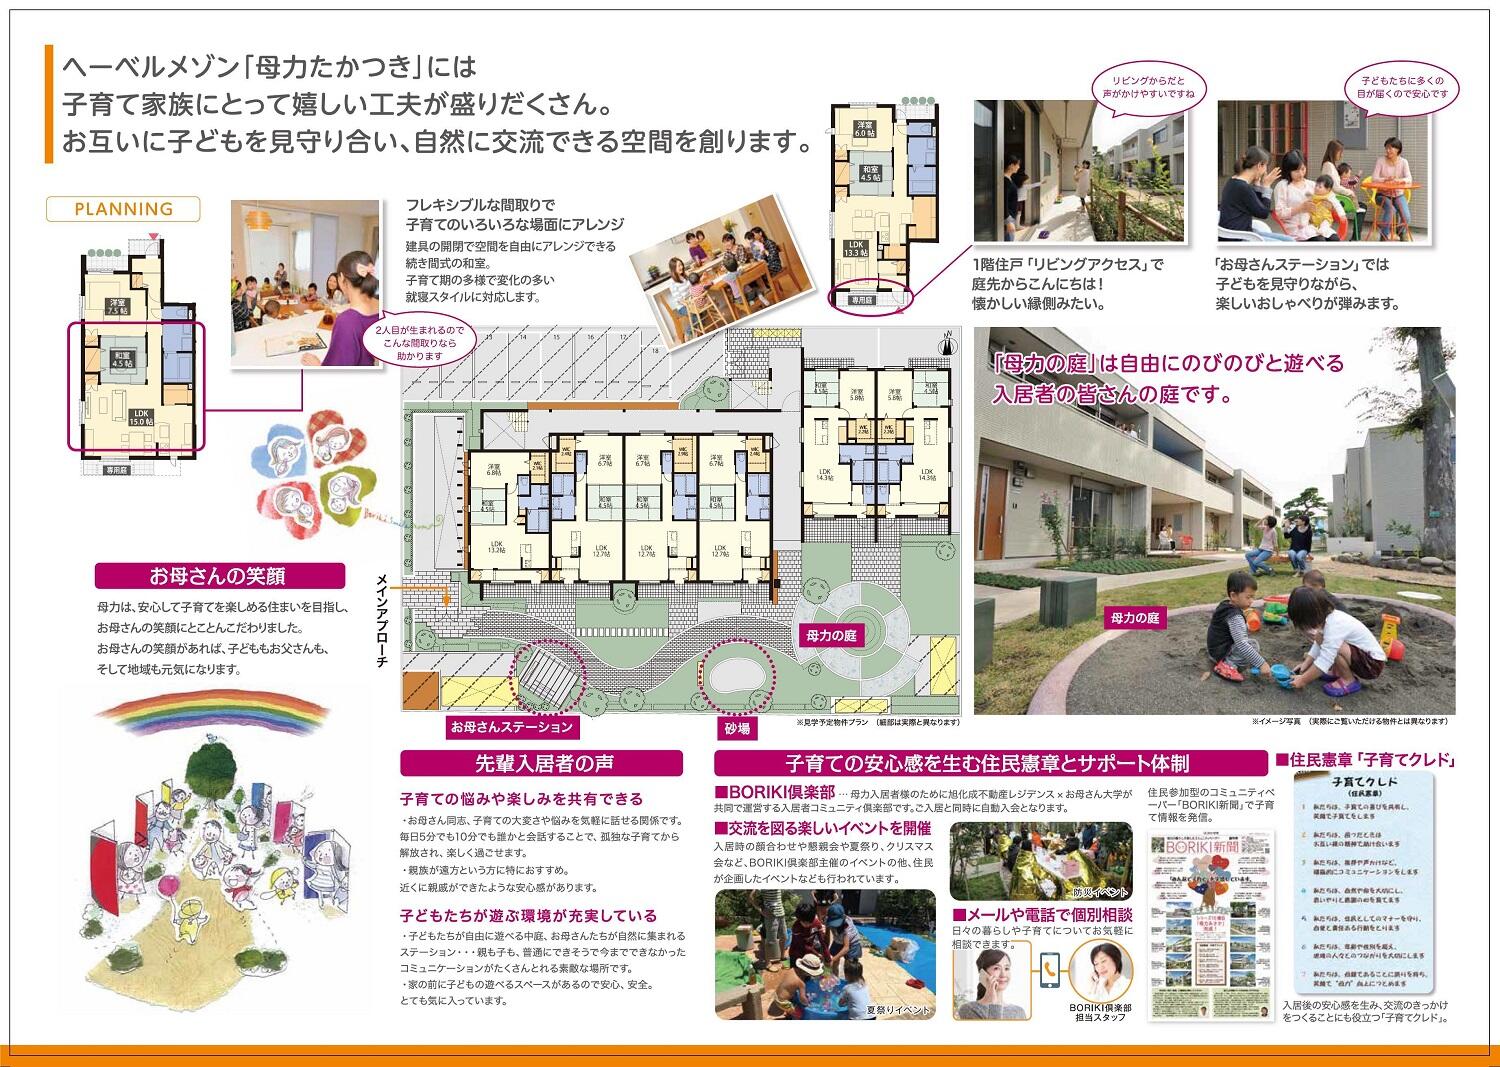 https://www.asahi-kasei.co.jp/maison/hebelplaza/blog/18/osaka/item/2020/20201126-3.jpg